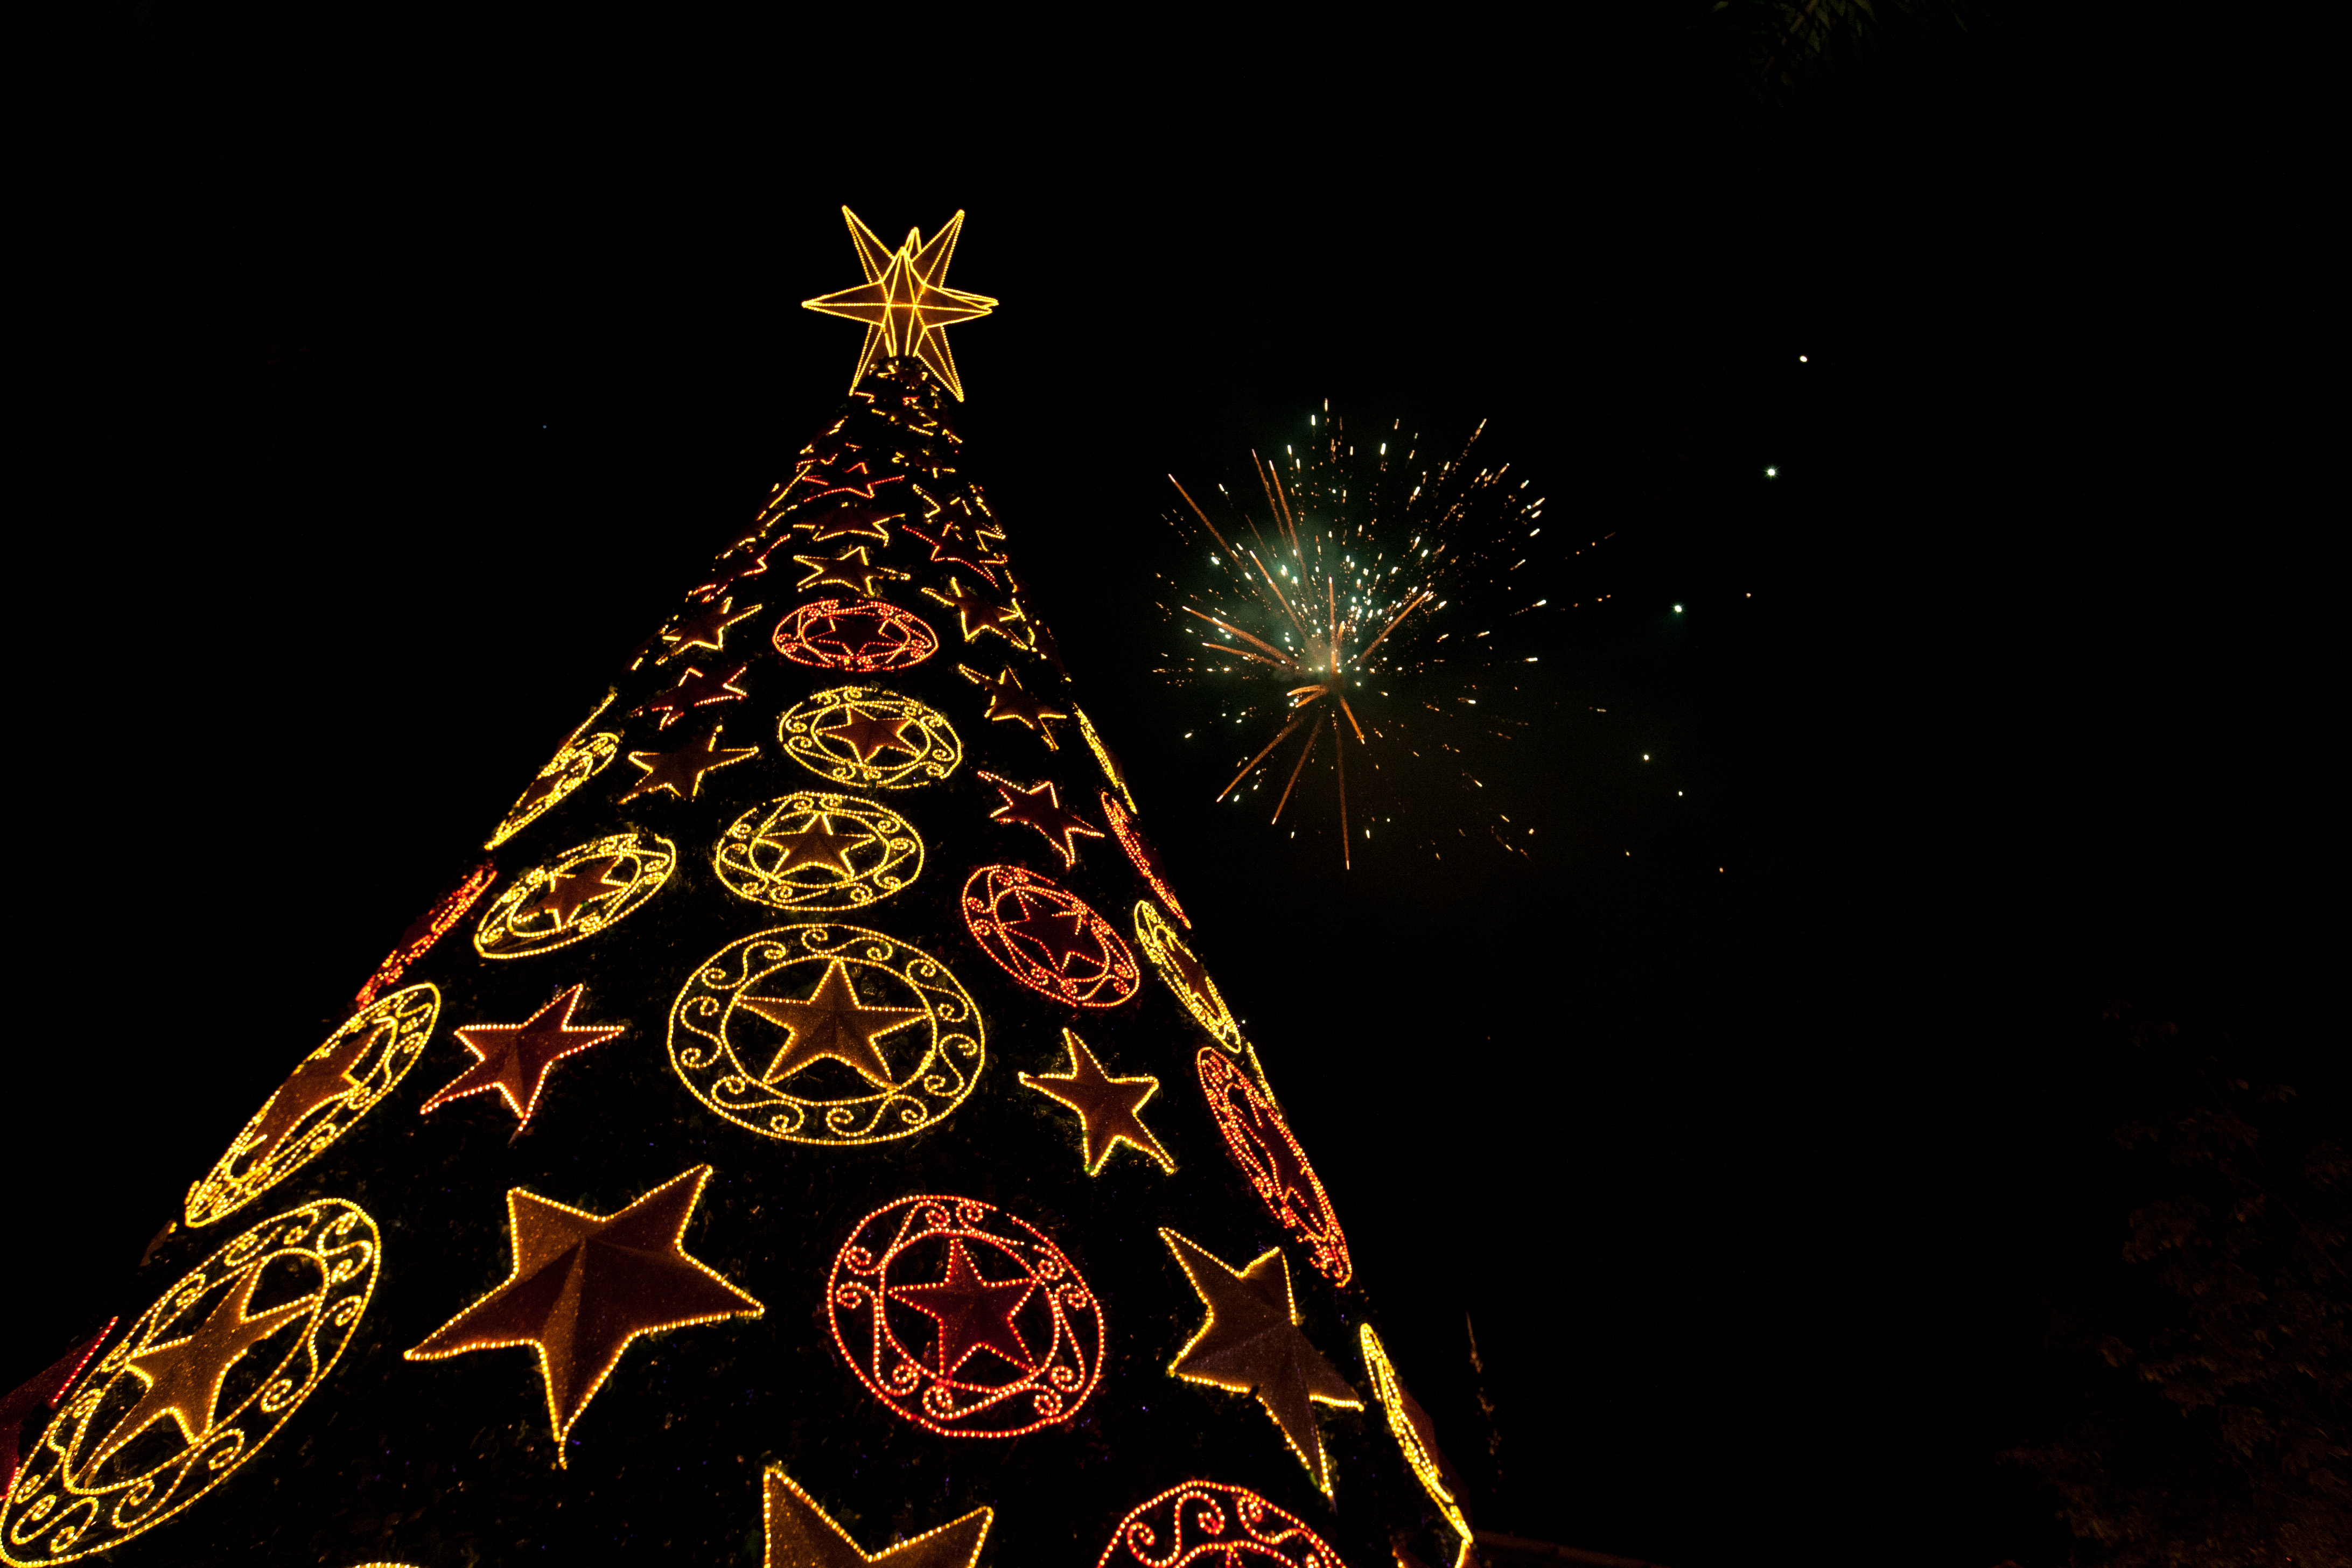 Decoração do Natal de Foz vai ter túnel de luz e árvore gigante - Clickfoz